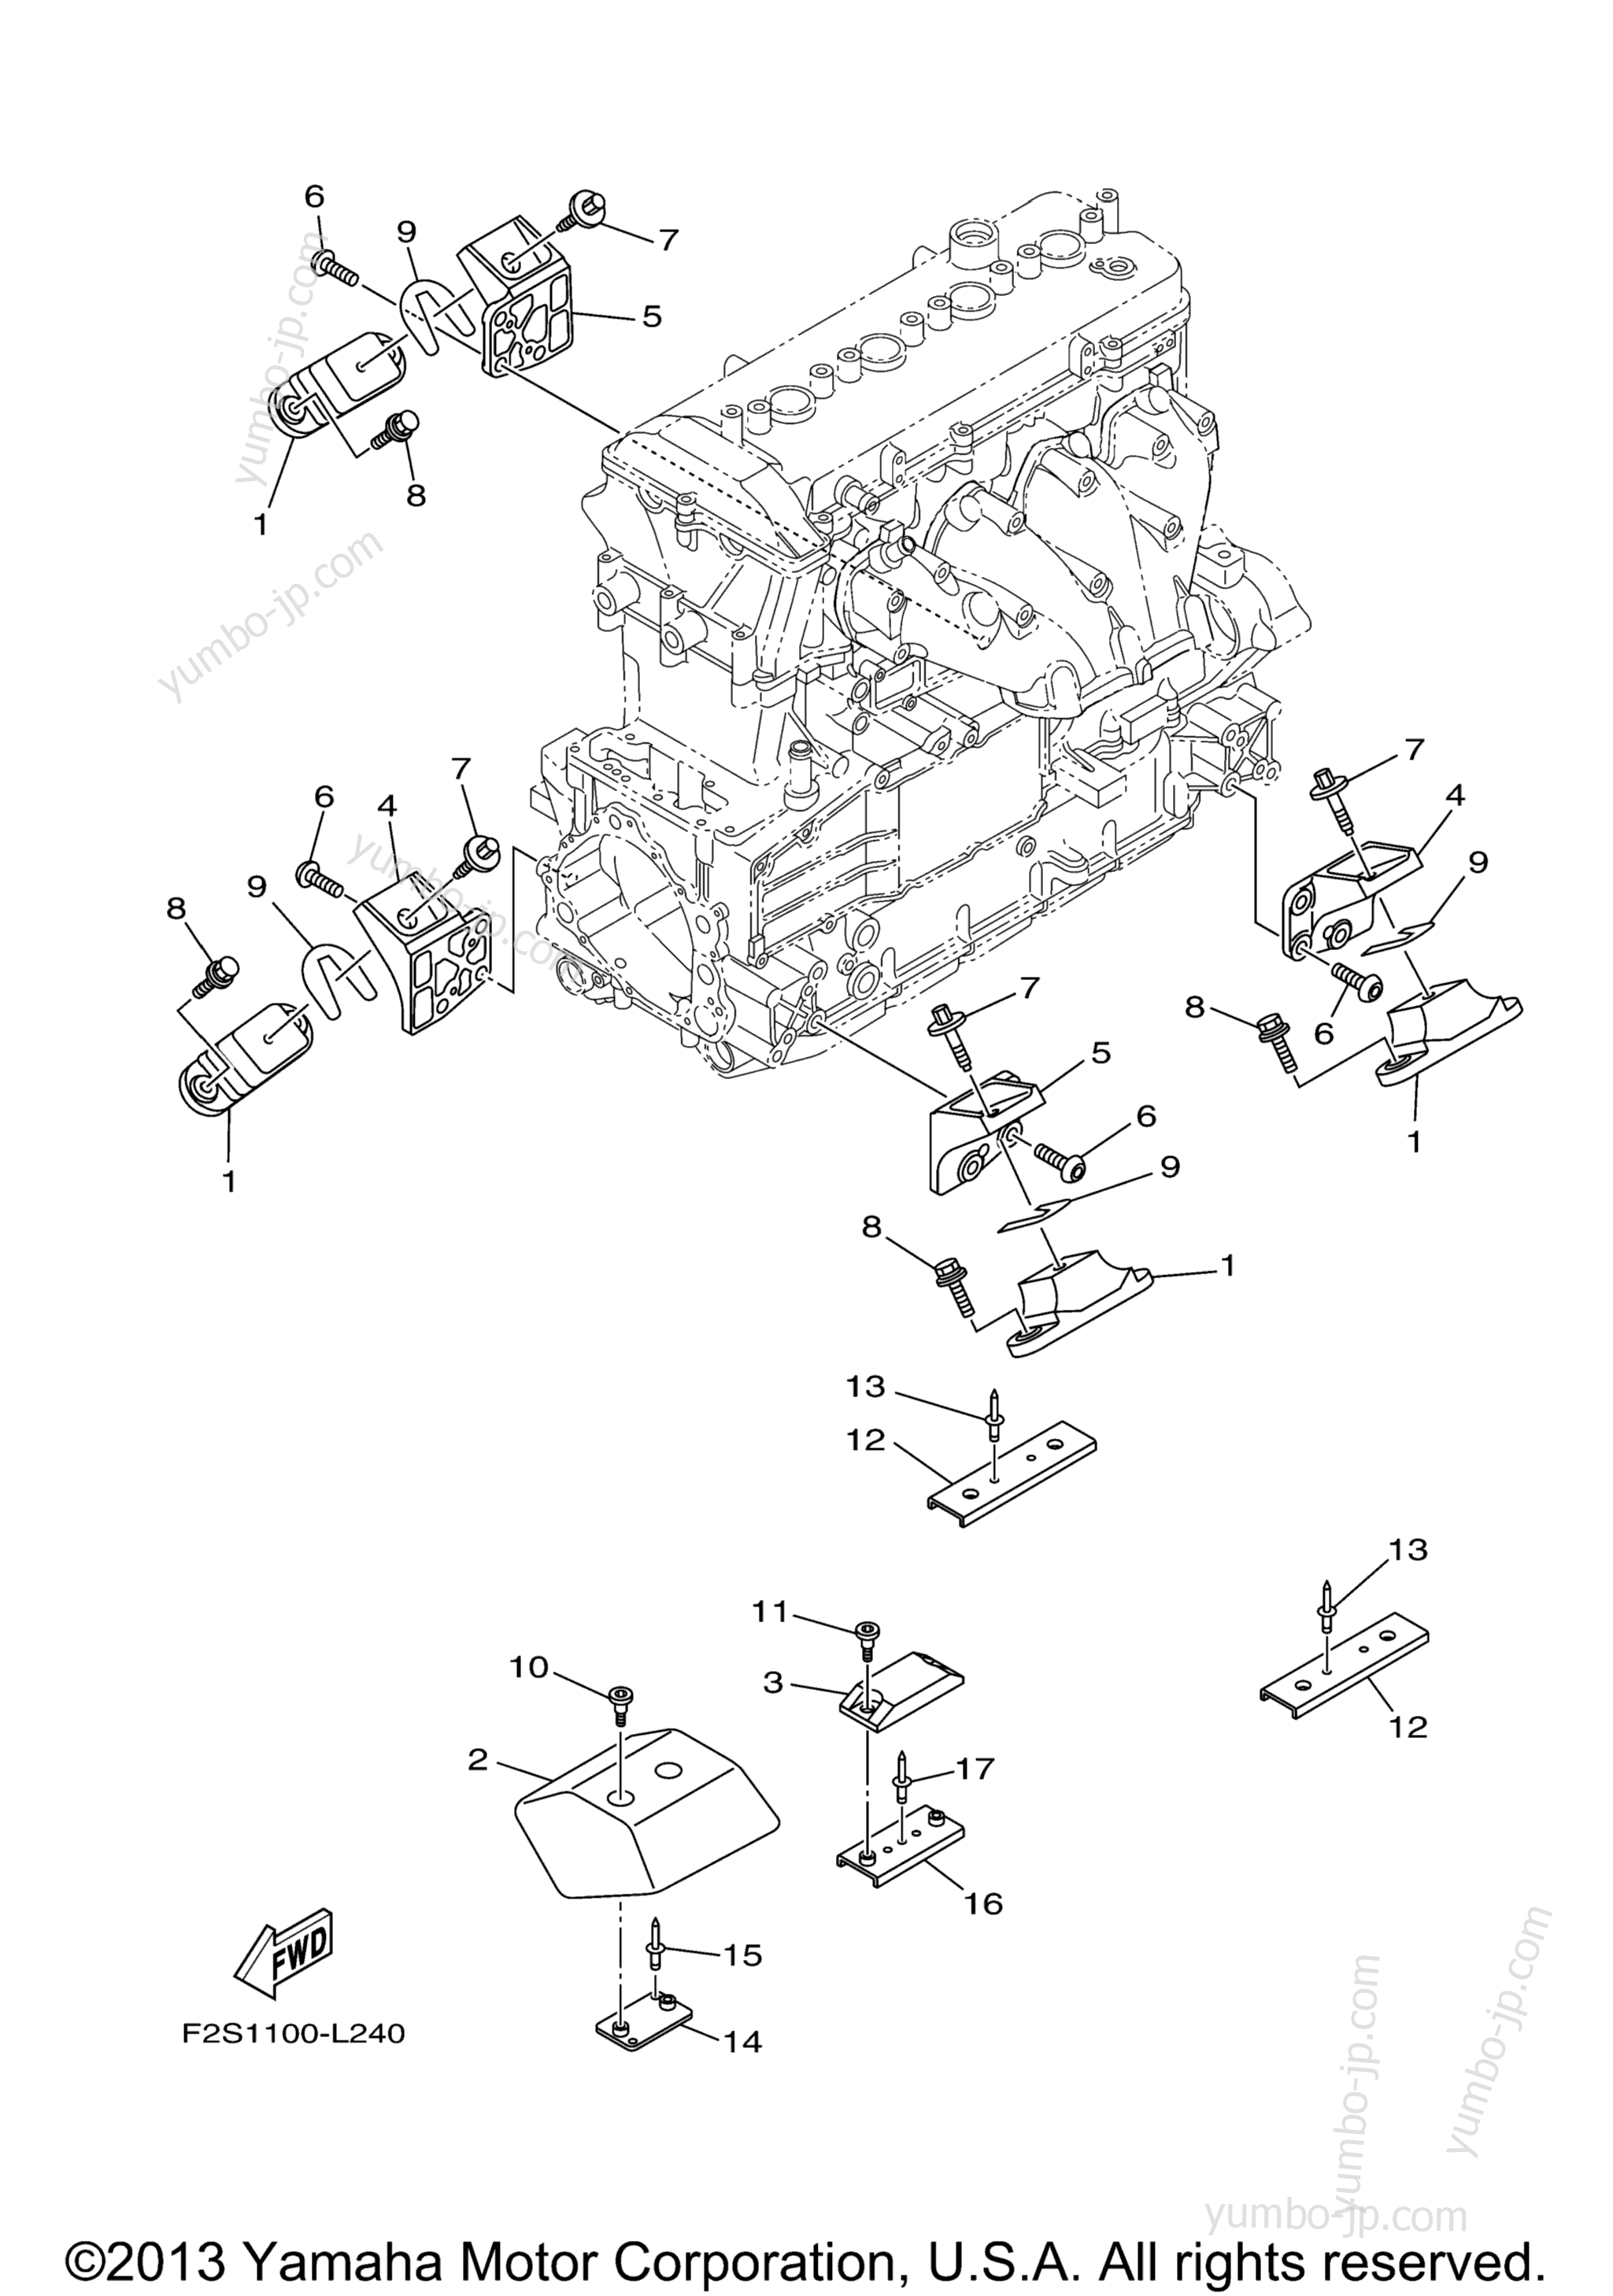 ENGINE MOUNT для гидроциклов YAMAHA WAVERUNNER FX HO (FB1800M) 2013 г.